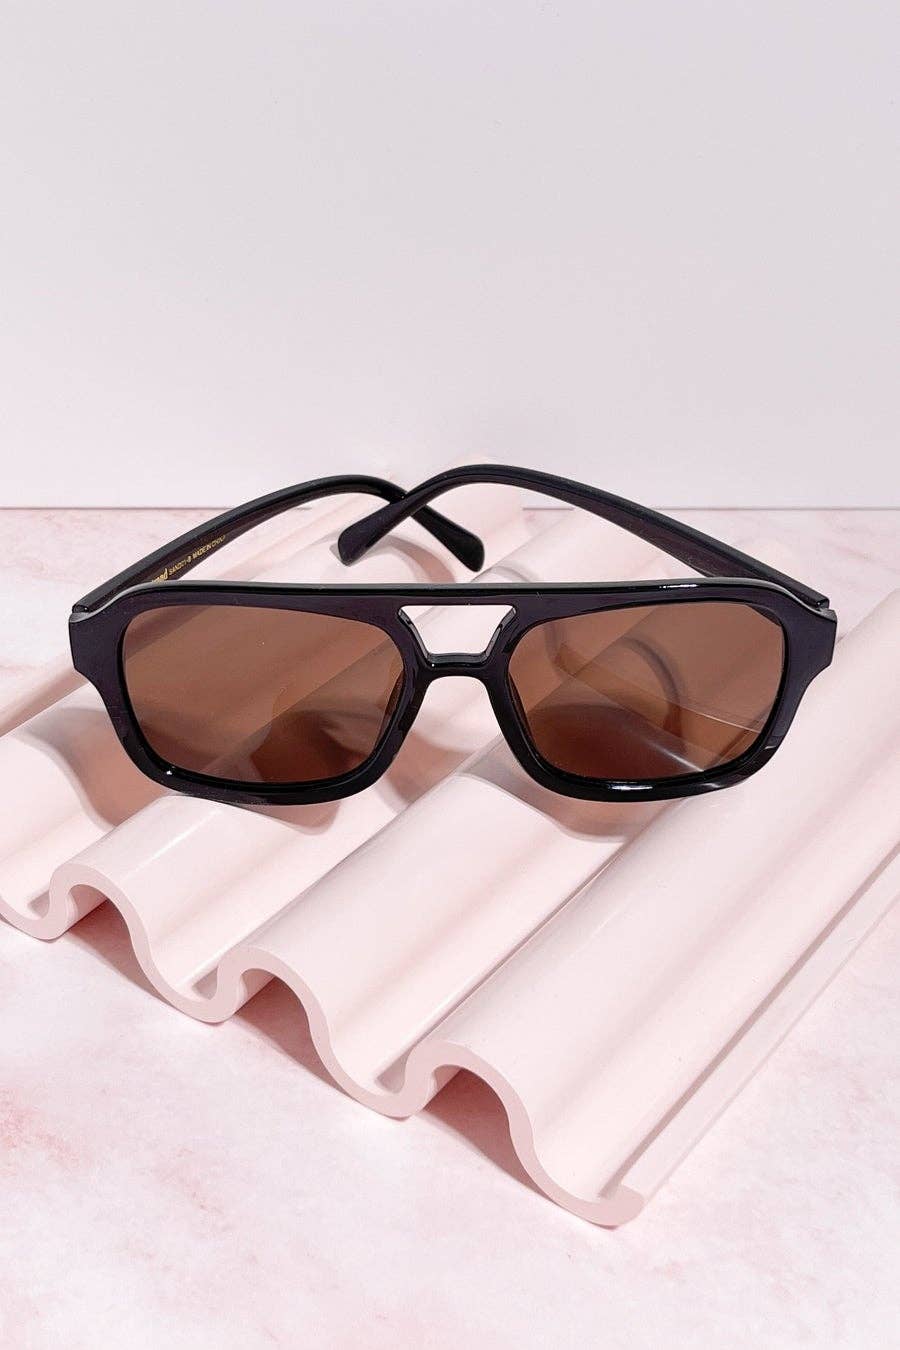 Sandbar Aviator Sunglasses